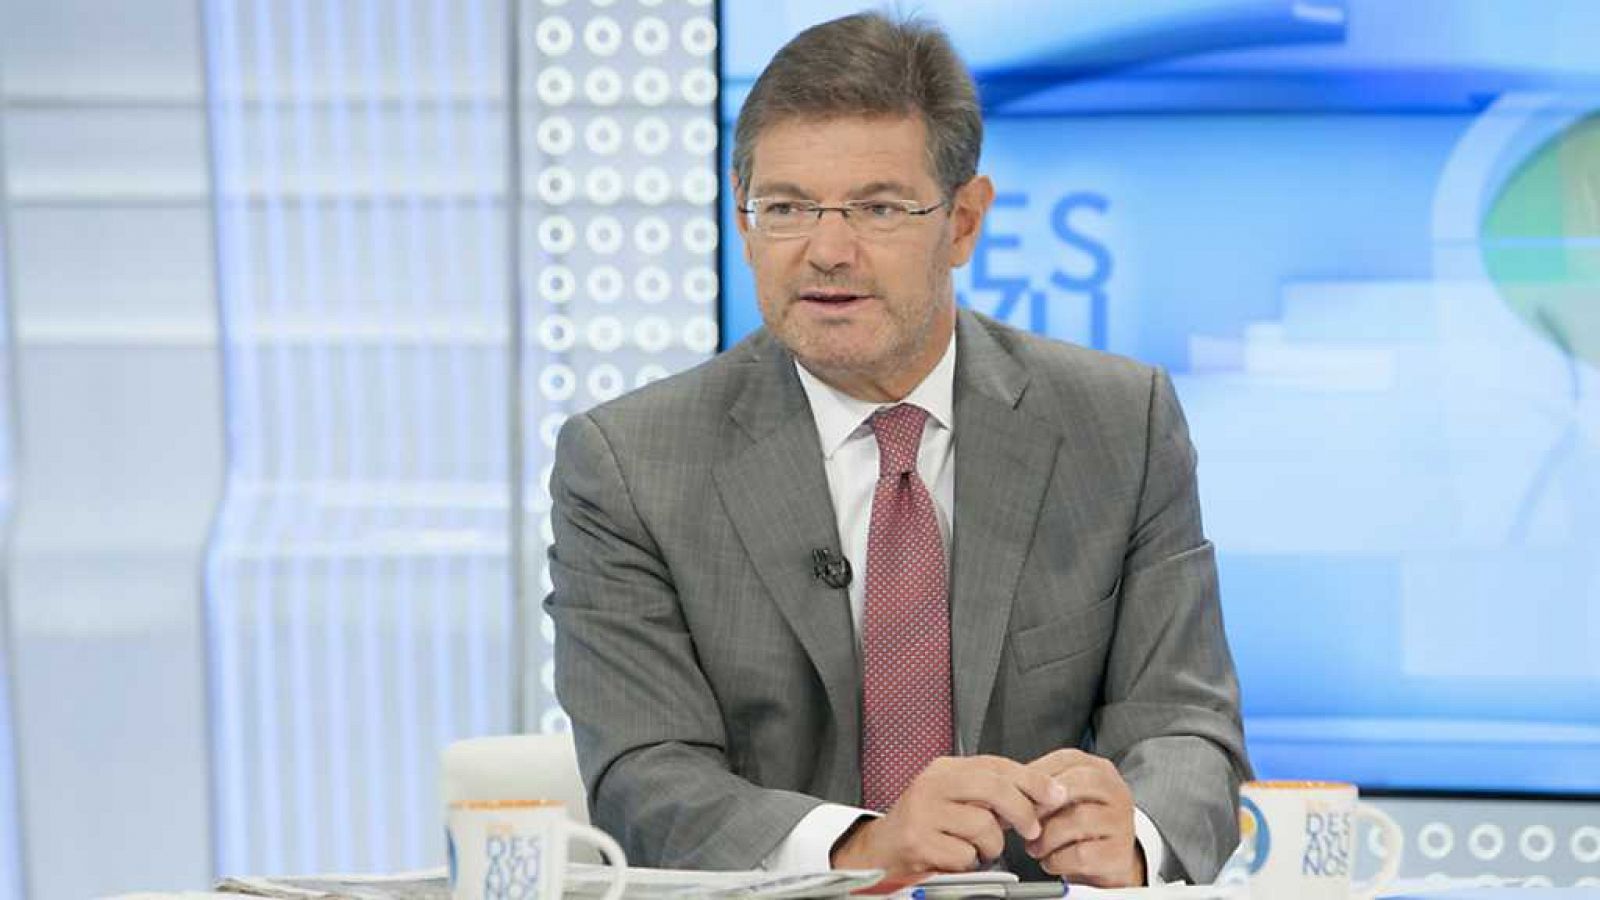 Los desayunos de TVE - Rafael Catalá, ministro de Justicia